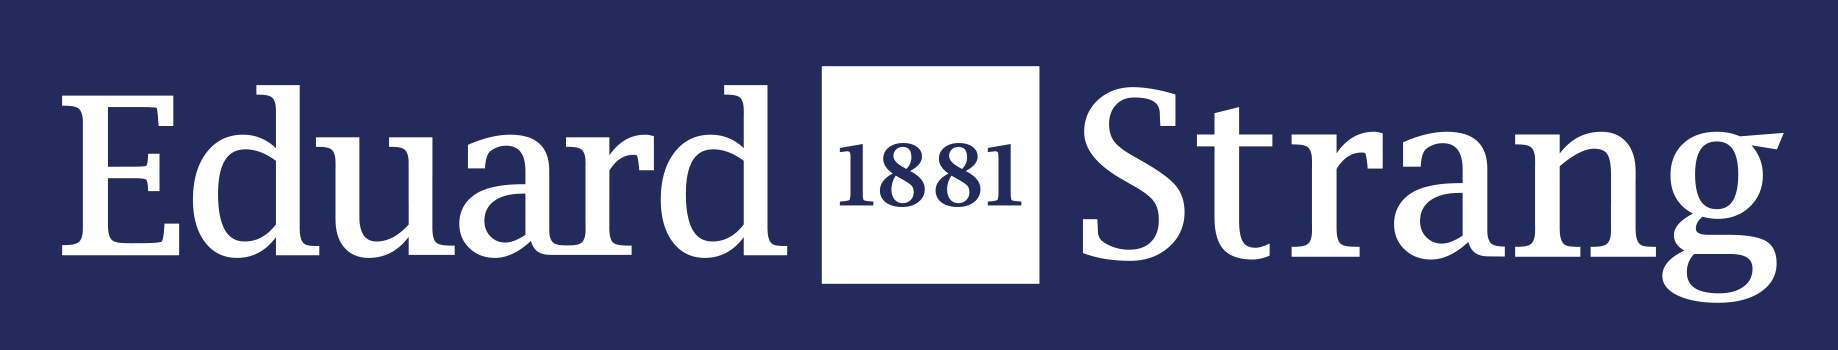 00288 logo Strang